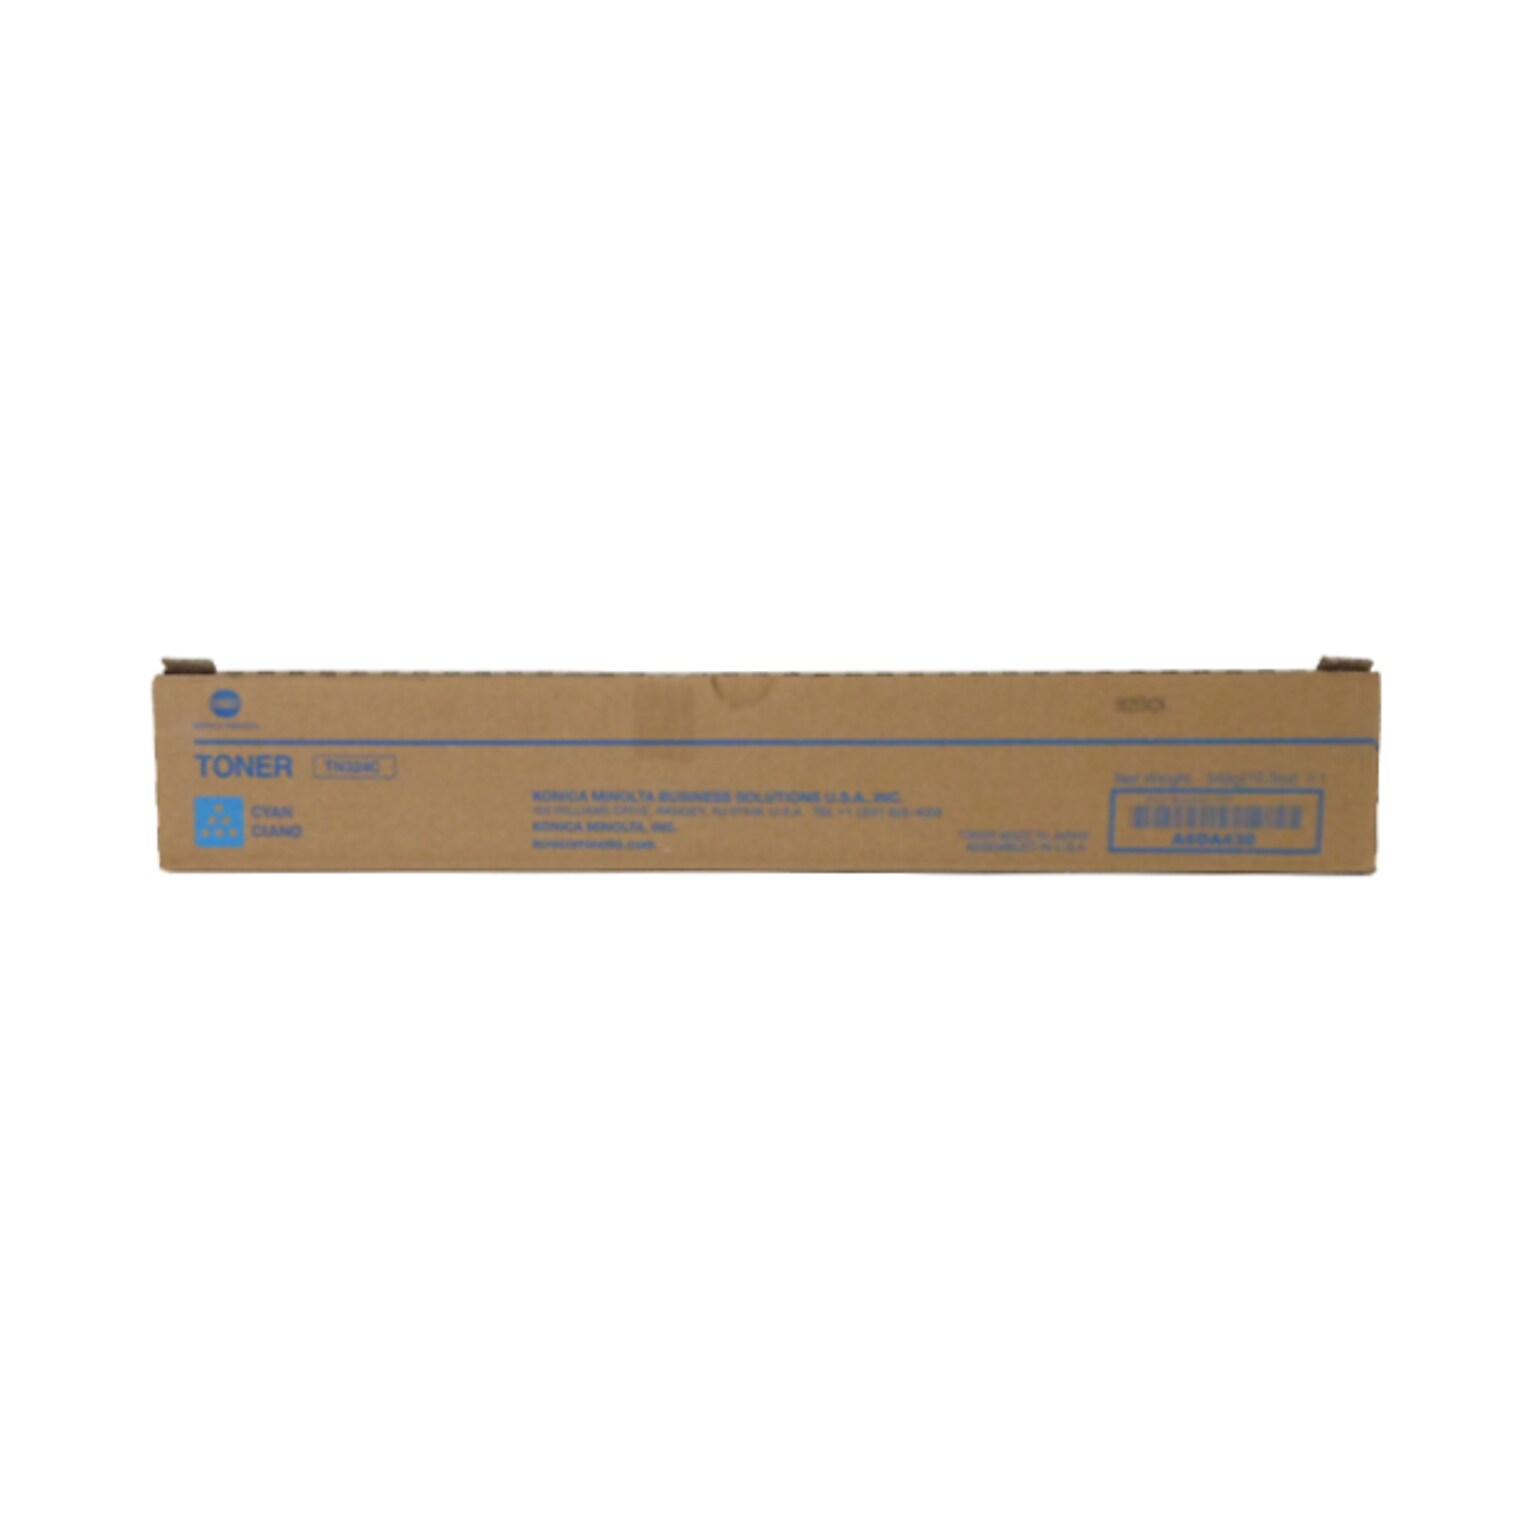 Konica Minolta TN324C Cyan Toner Cartridge, Standard Yield, Proprietary